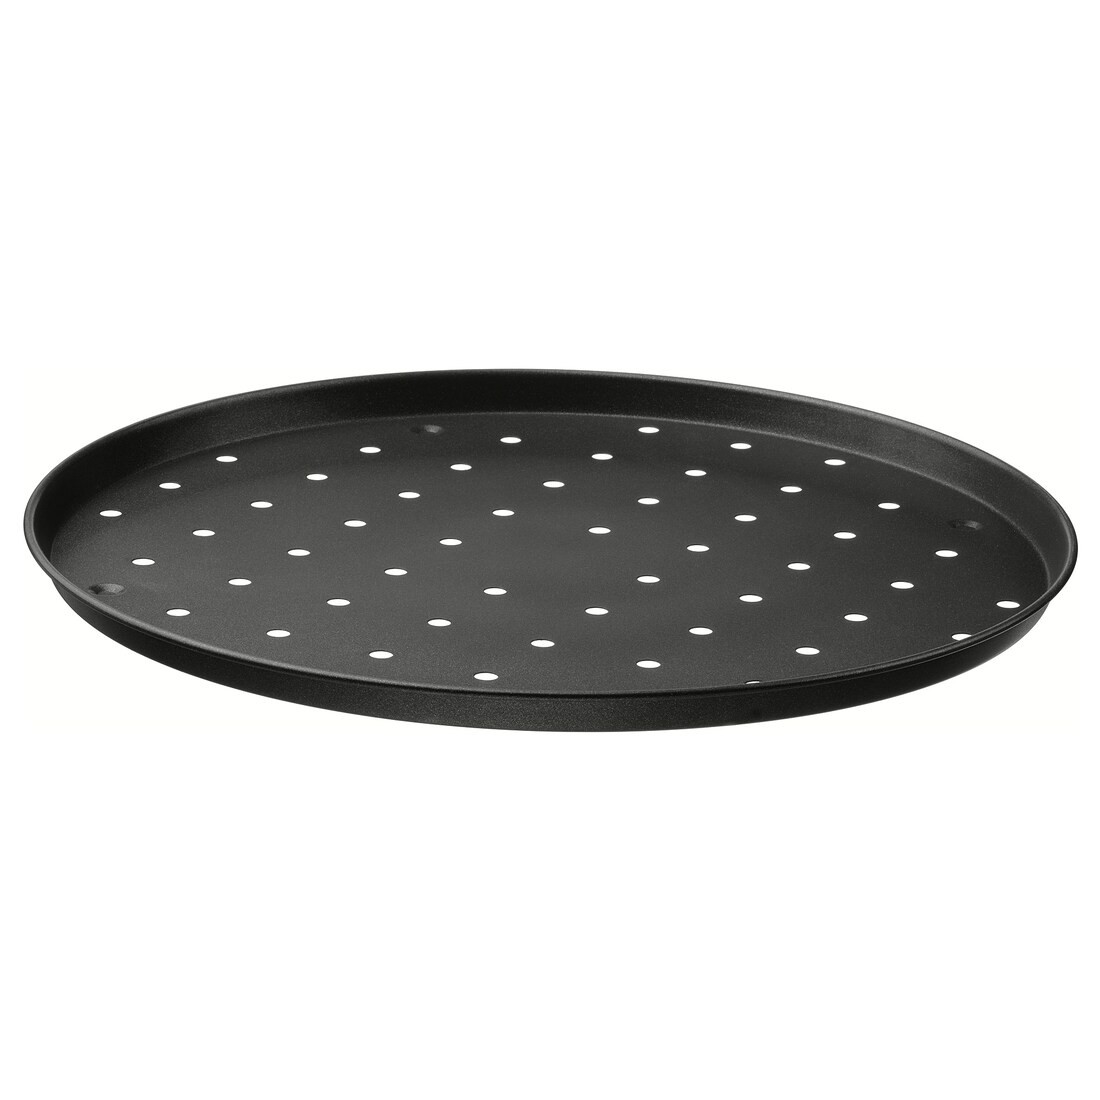 MÅNTAGG Сковорода для піци, антипригарне покриття темно-сірого кольору, 37 см